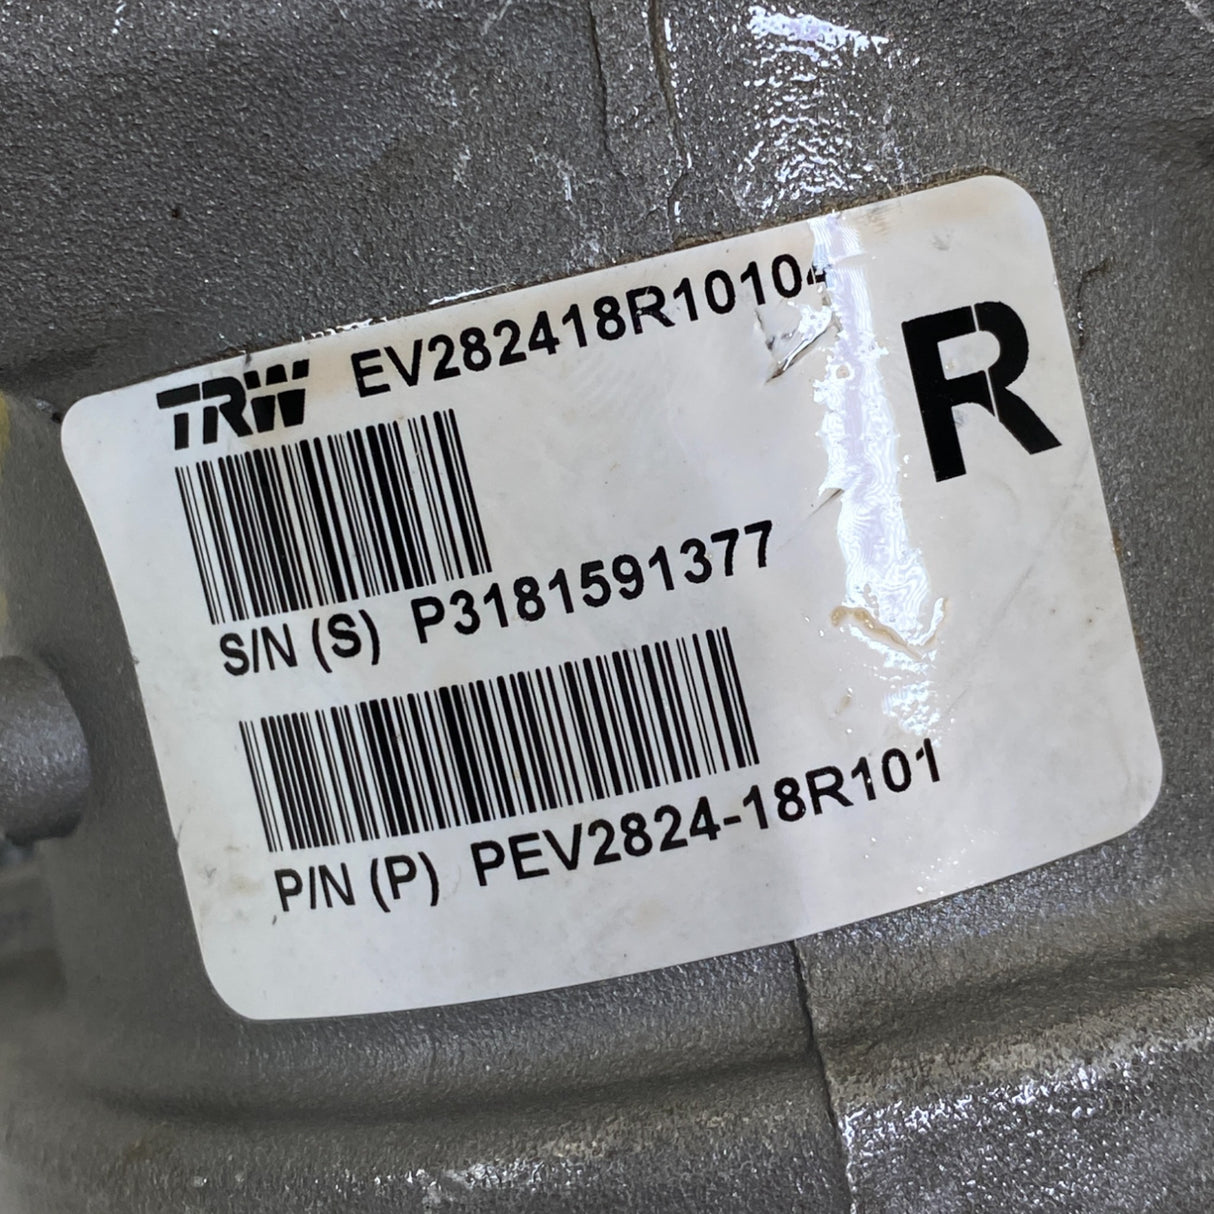 PEV2824-18R101 Genuine TRW Power Steering Pump